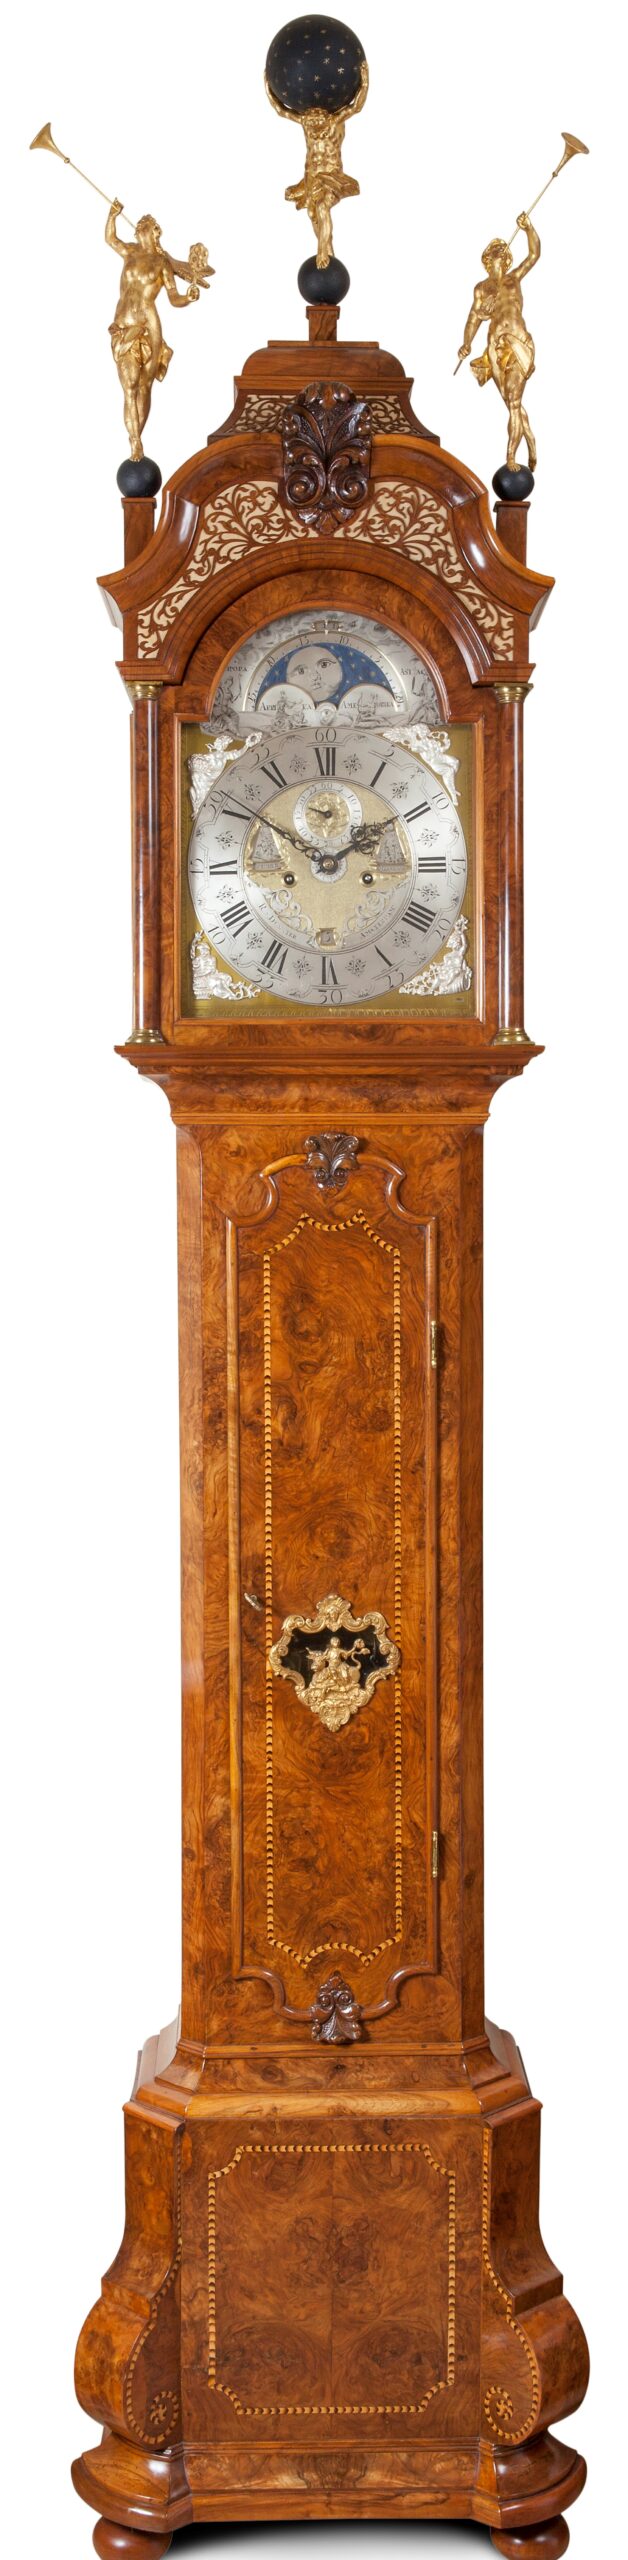 Charmant fusie Voorlopige naam Collectie antieke klokken, staande klok Dunster 18e eeuw